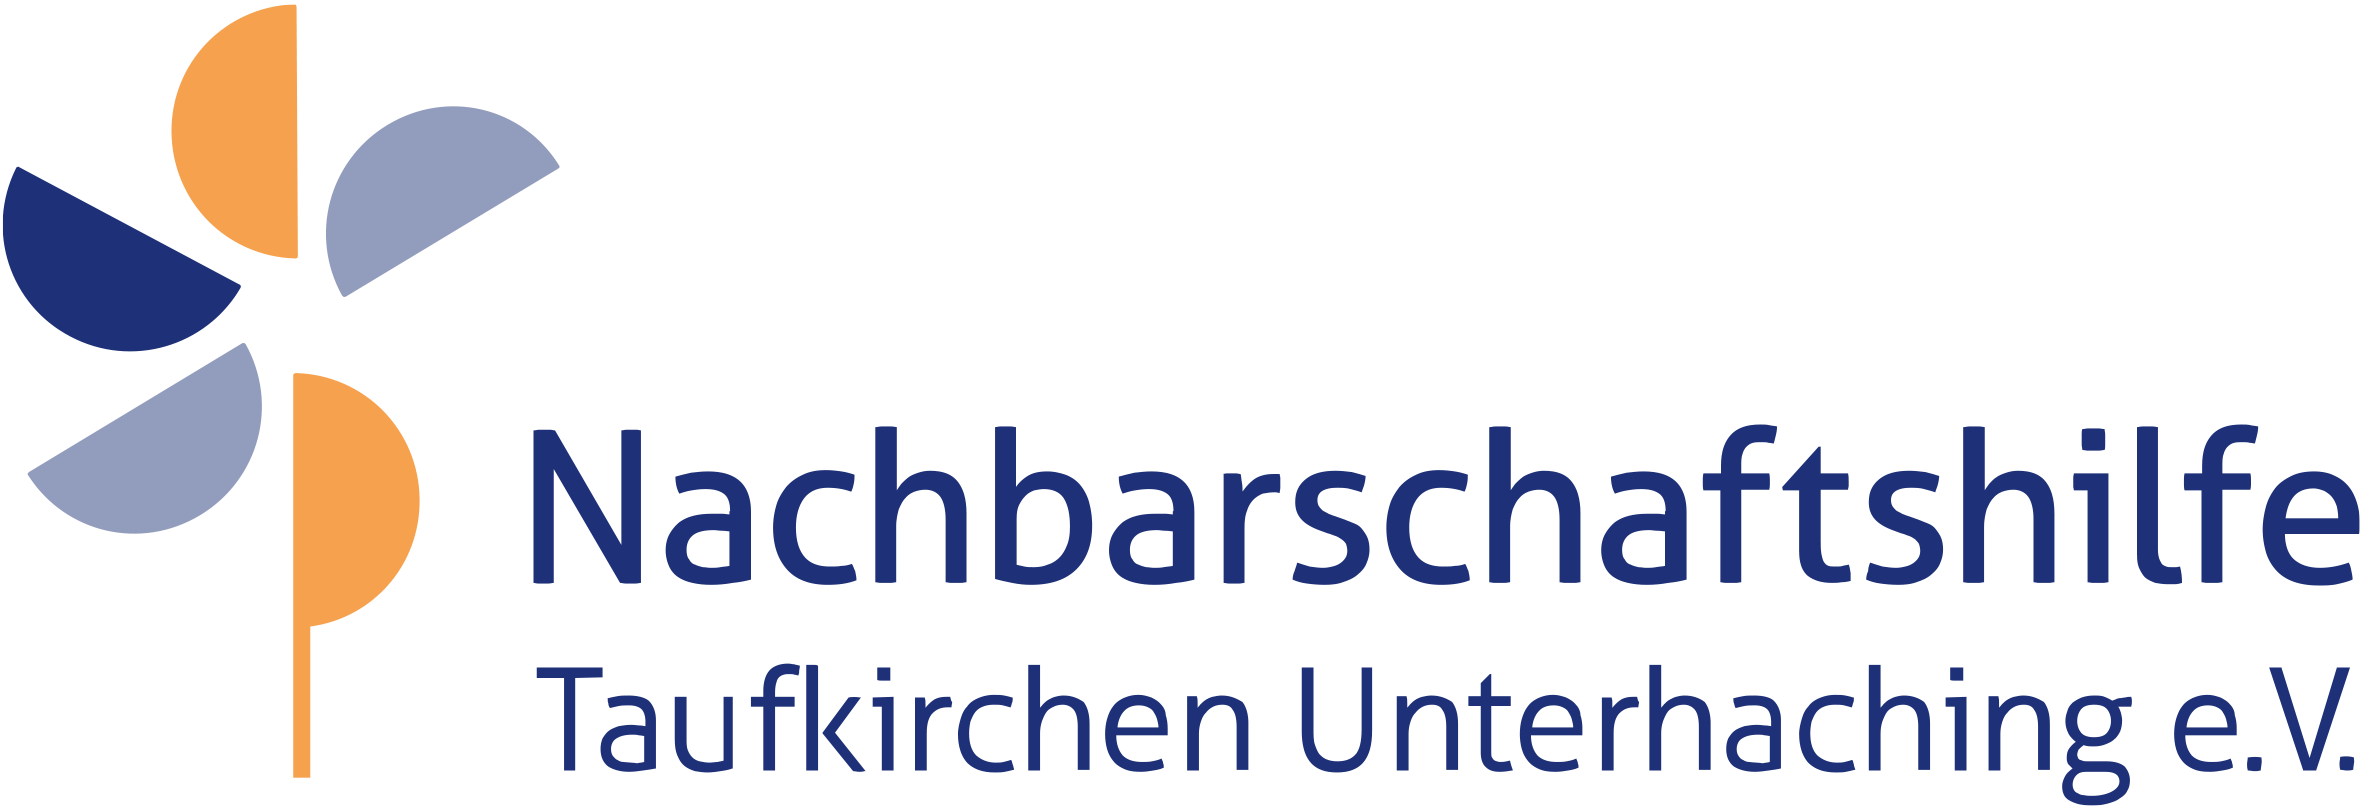 Nachbarschaftshilfe Taufkirchen Unterhaching - Familienpflege